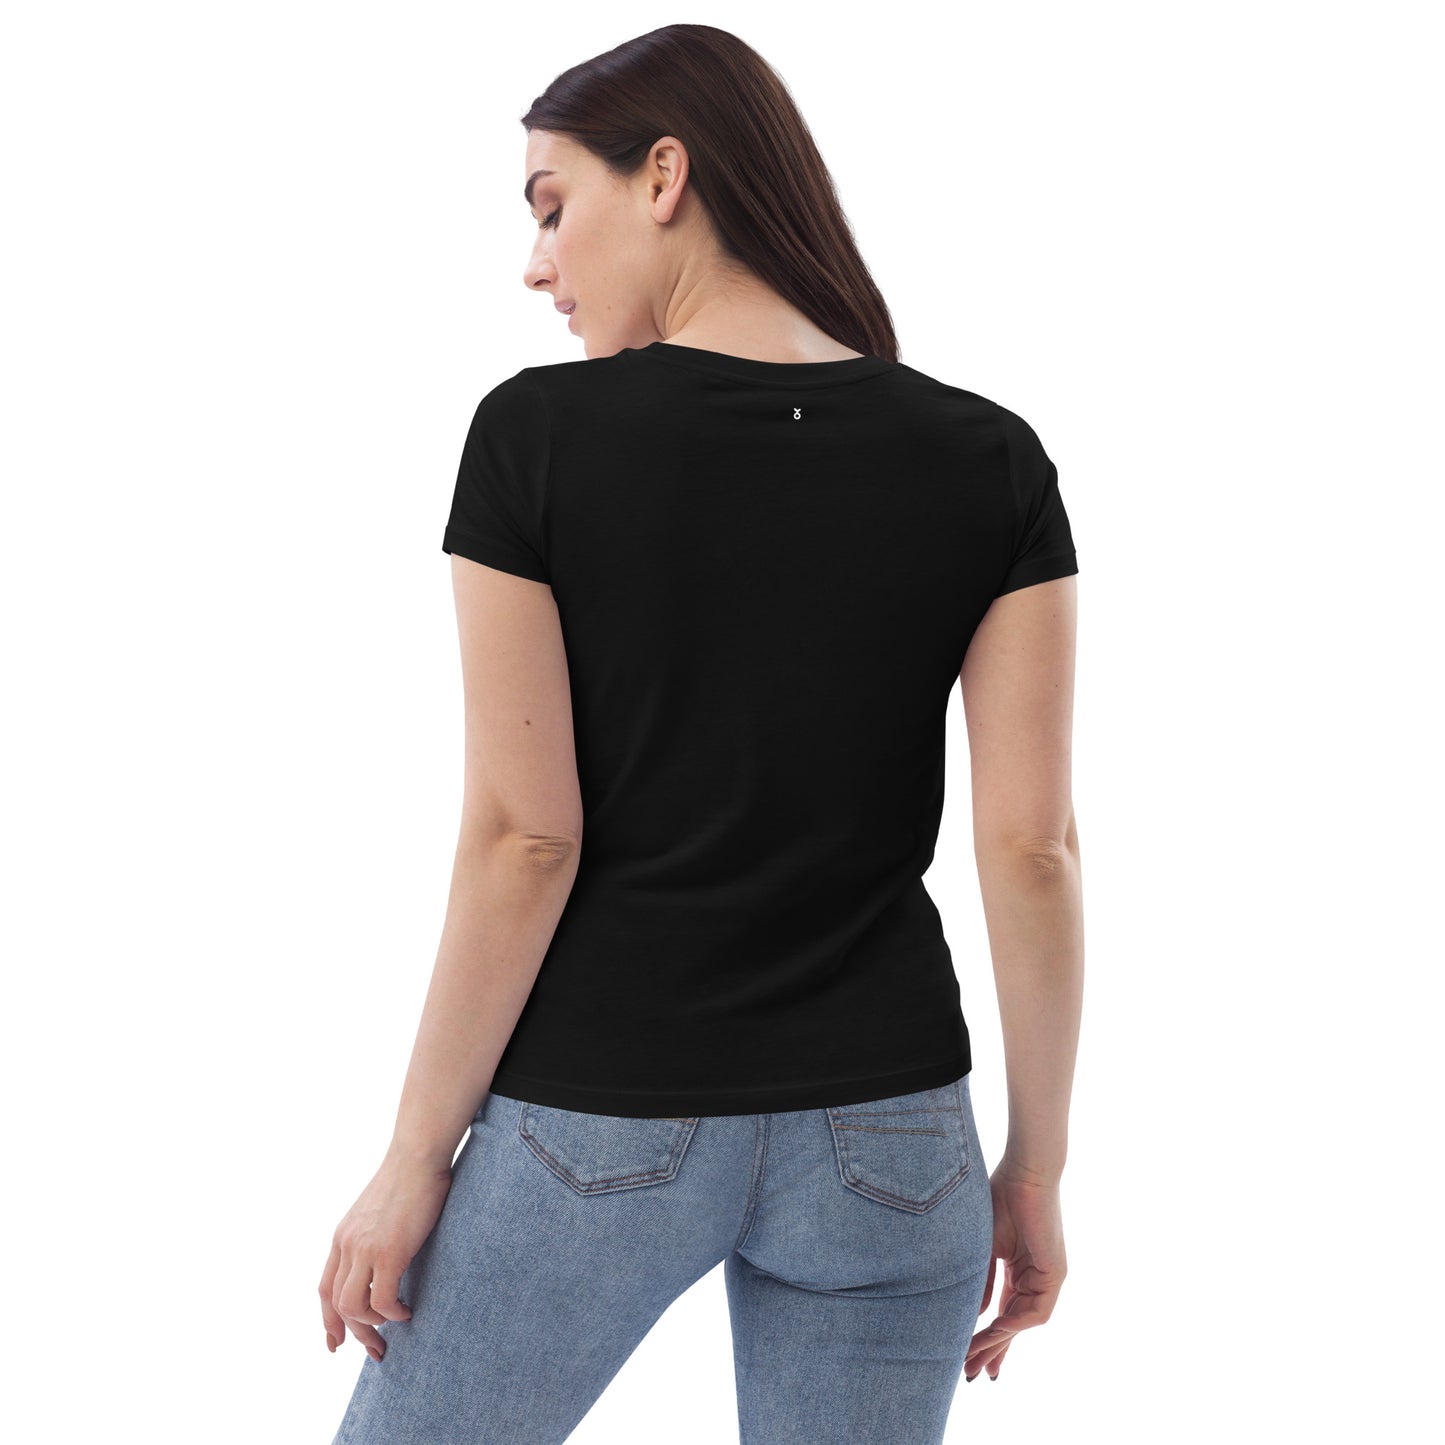 Schwarzes T-Shirt aus Bio-Baumwolle im Bauhausstil mit Frühlingsvögeln gestickt - Damen